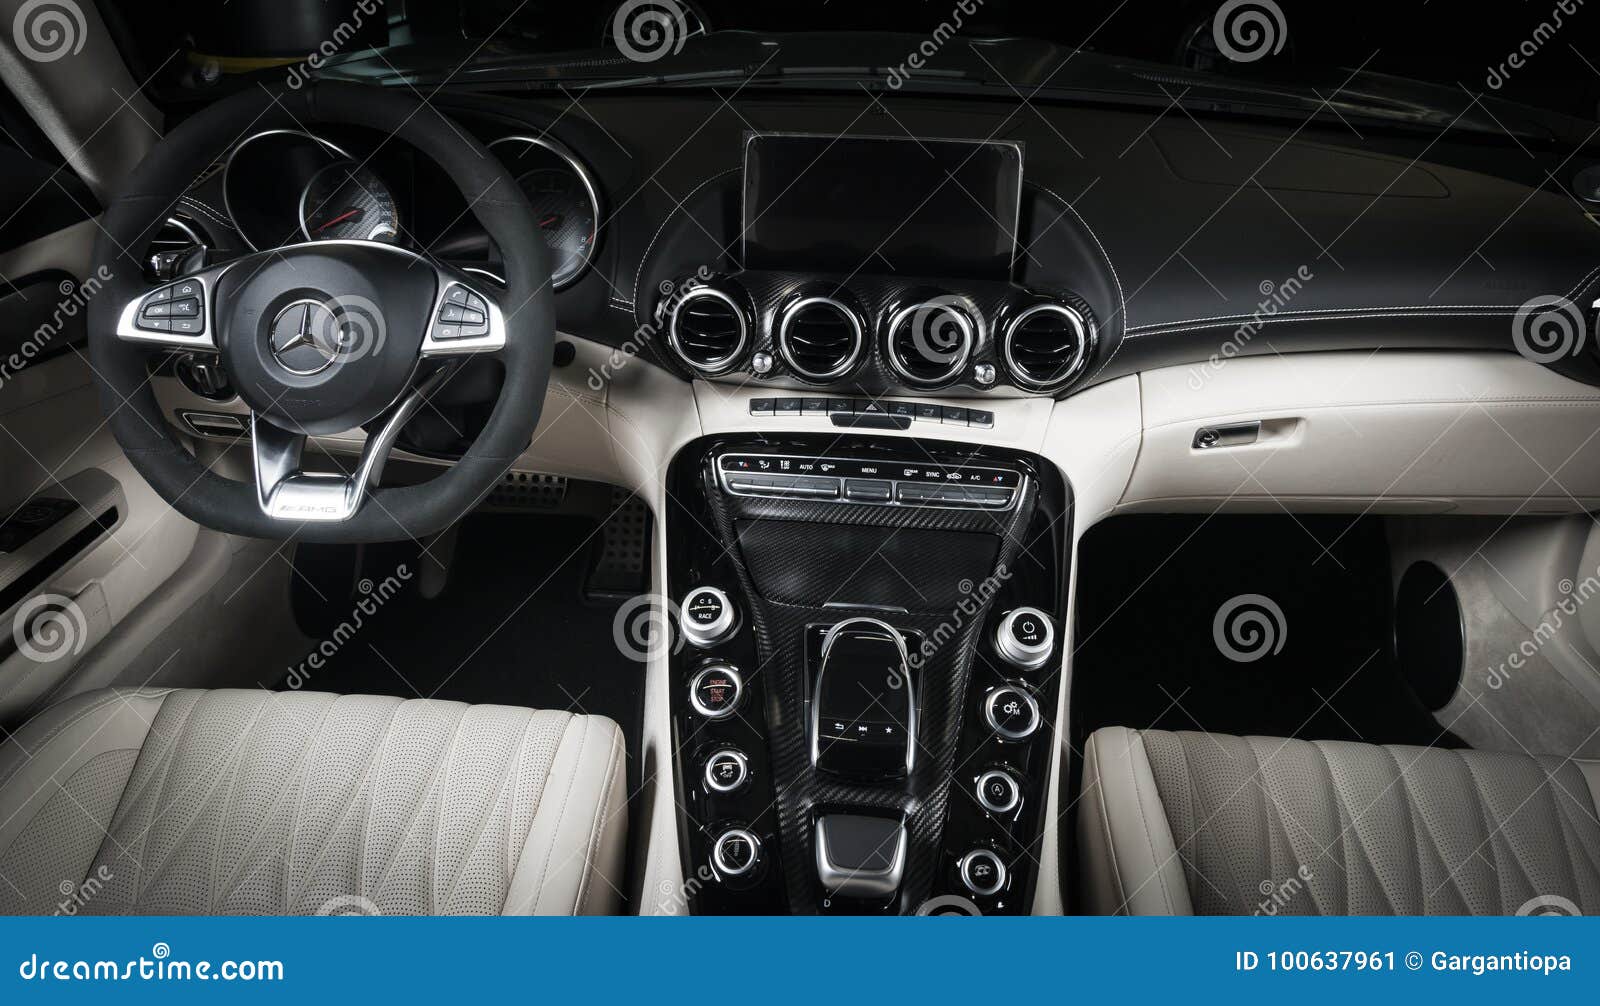 Mercedes Benz Gt C White Leather Interior Dashboard